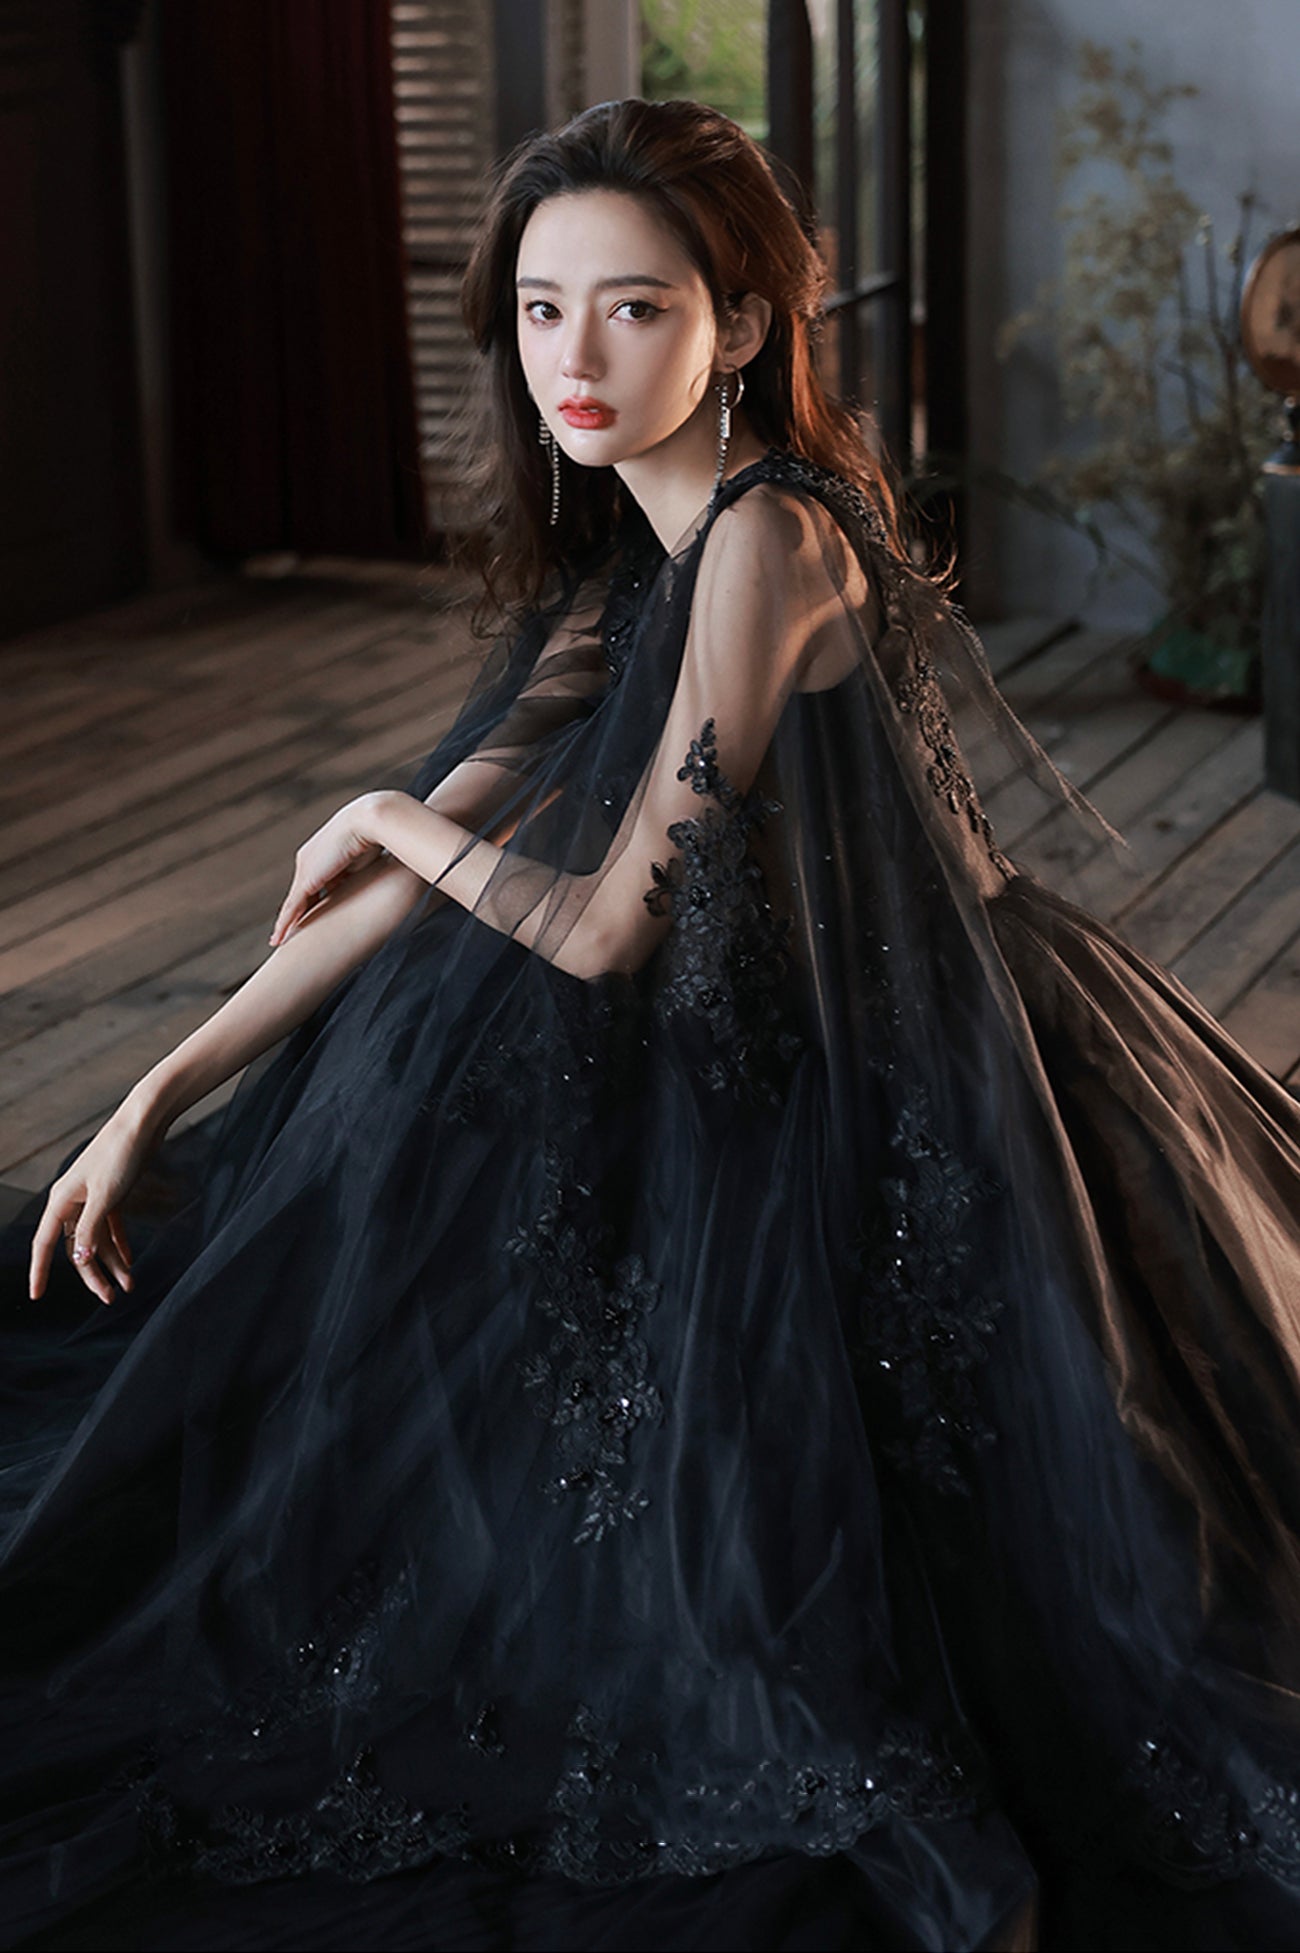 Black V-Neck Lace Long Prom Dress, Black A-Line Evening Party Dress